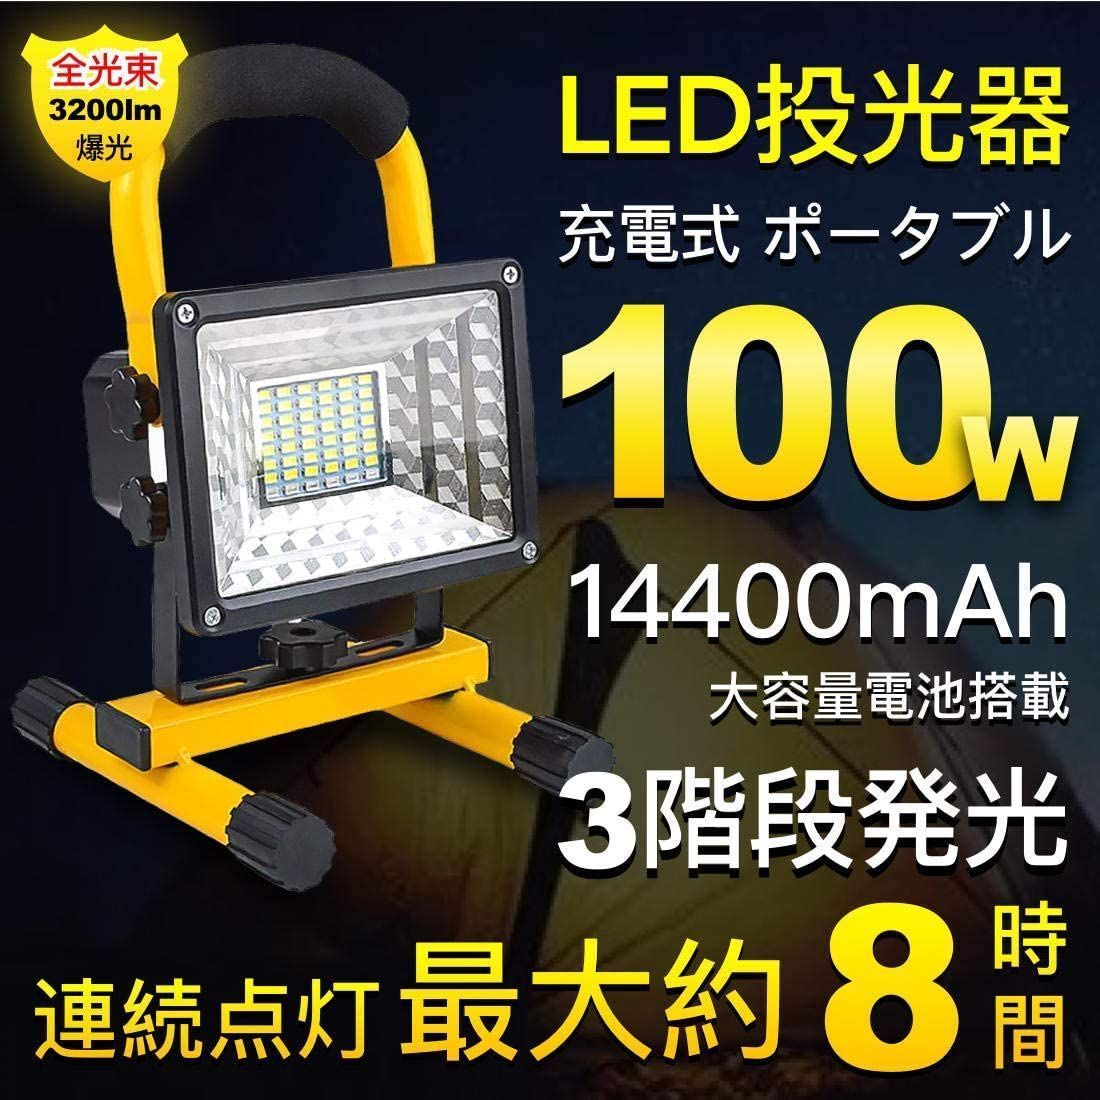 信頼 LED投光器 充電式 100W LED作業灯 ポータブル投光器 非常灯 看板灯 5118.61円 その他